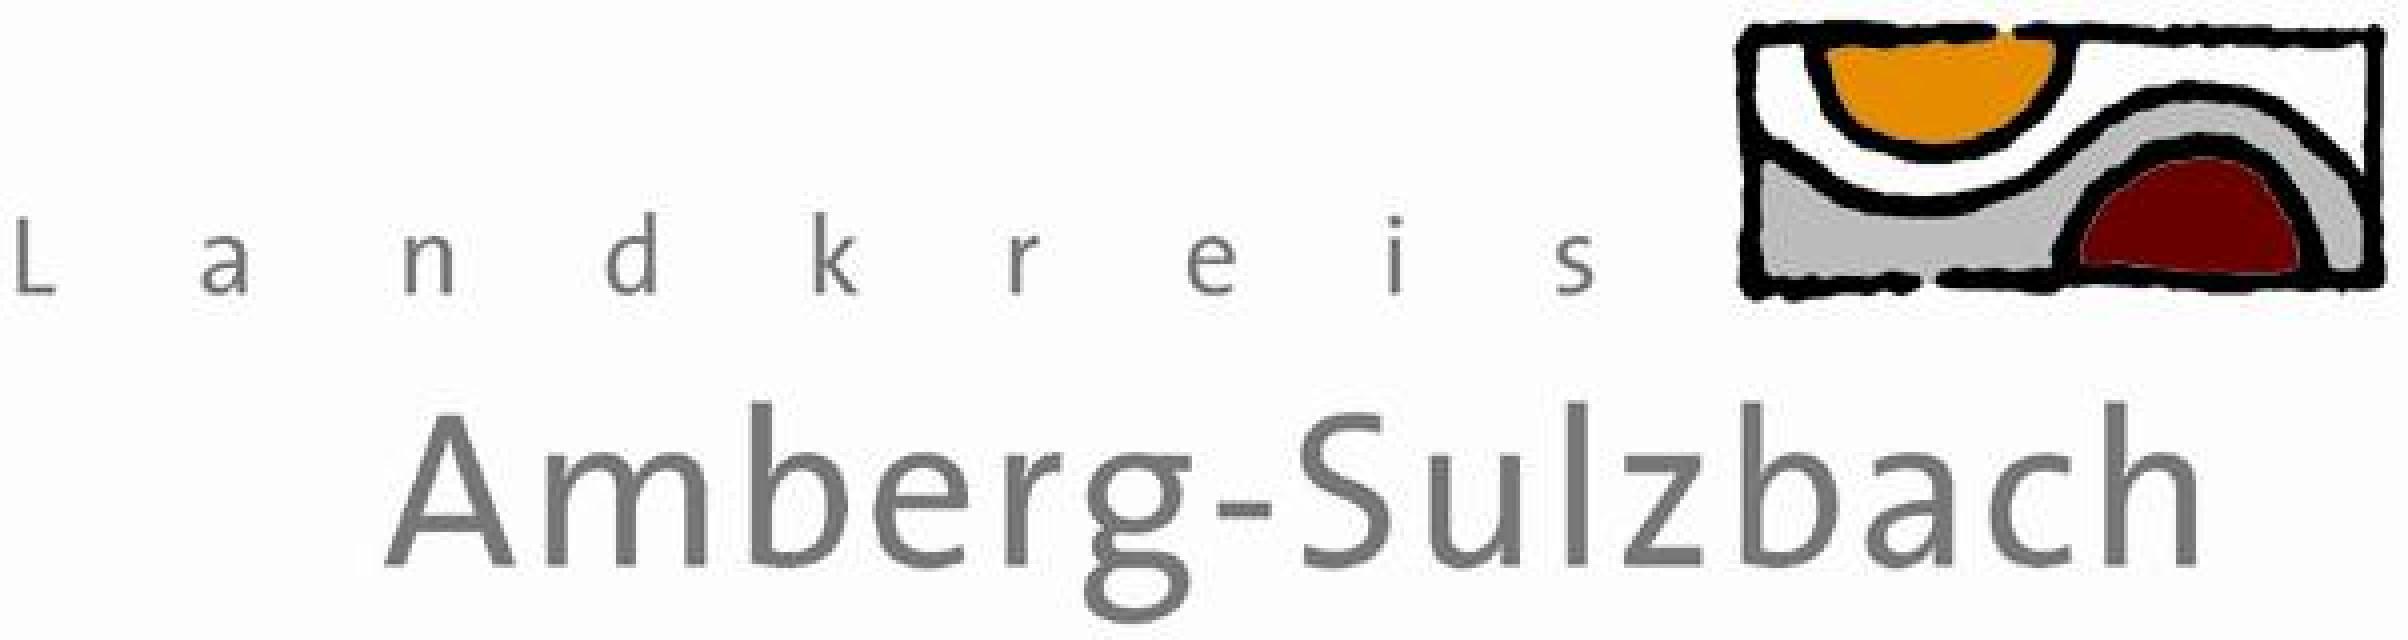 Auskünfte und Informationen zum Amberg-Sulzbacher Land!